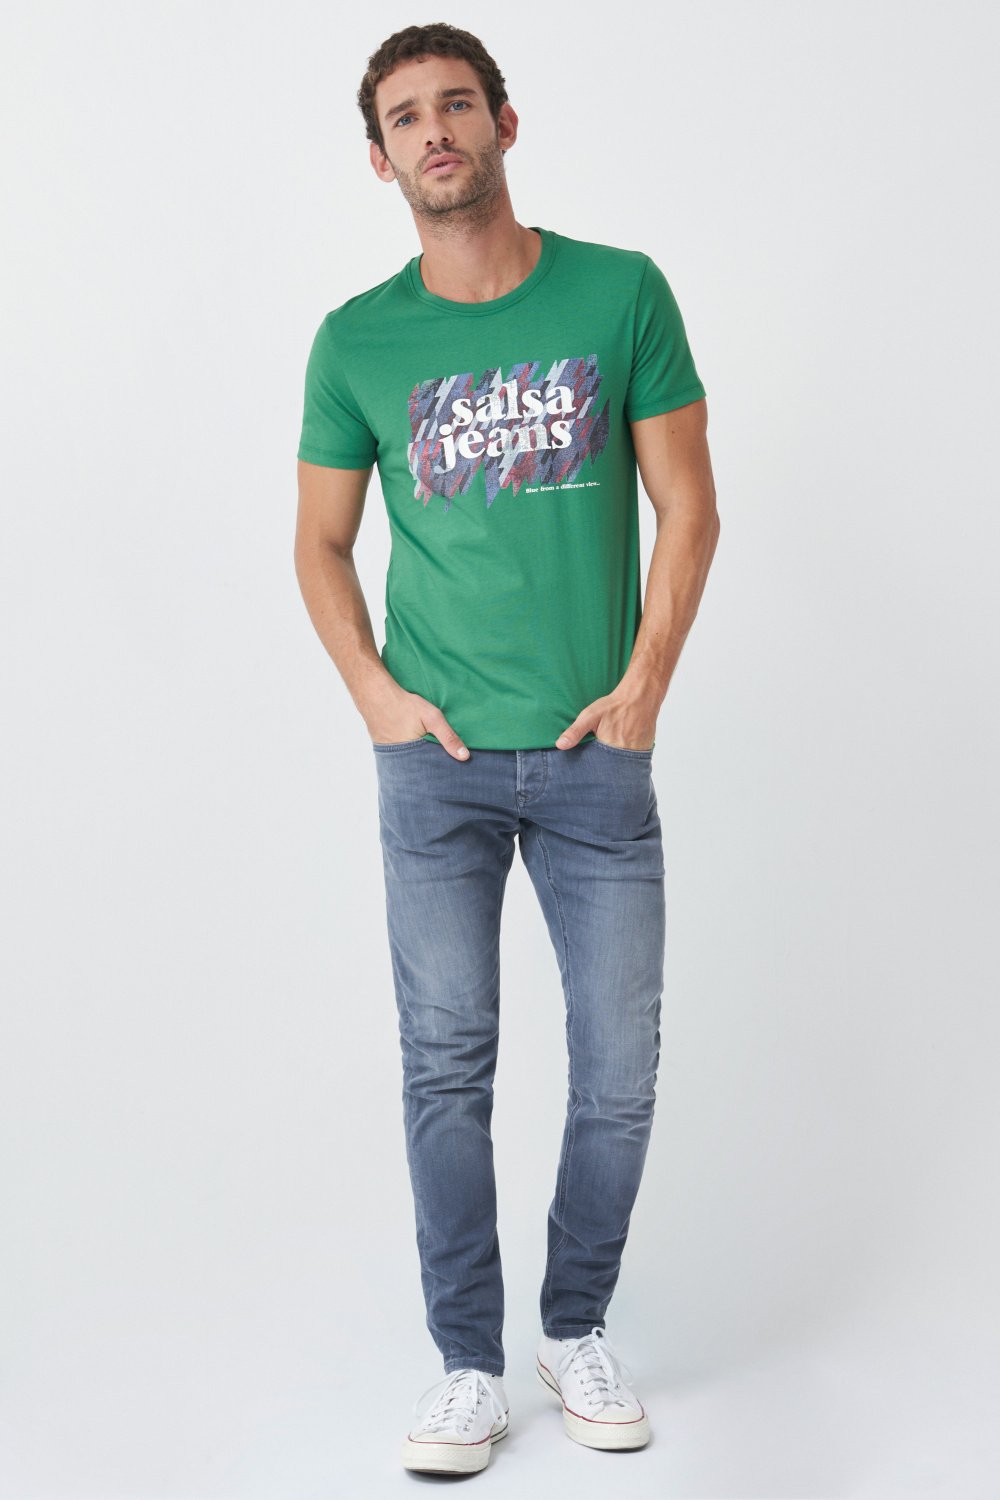 Print branding t-shirt - Salsa